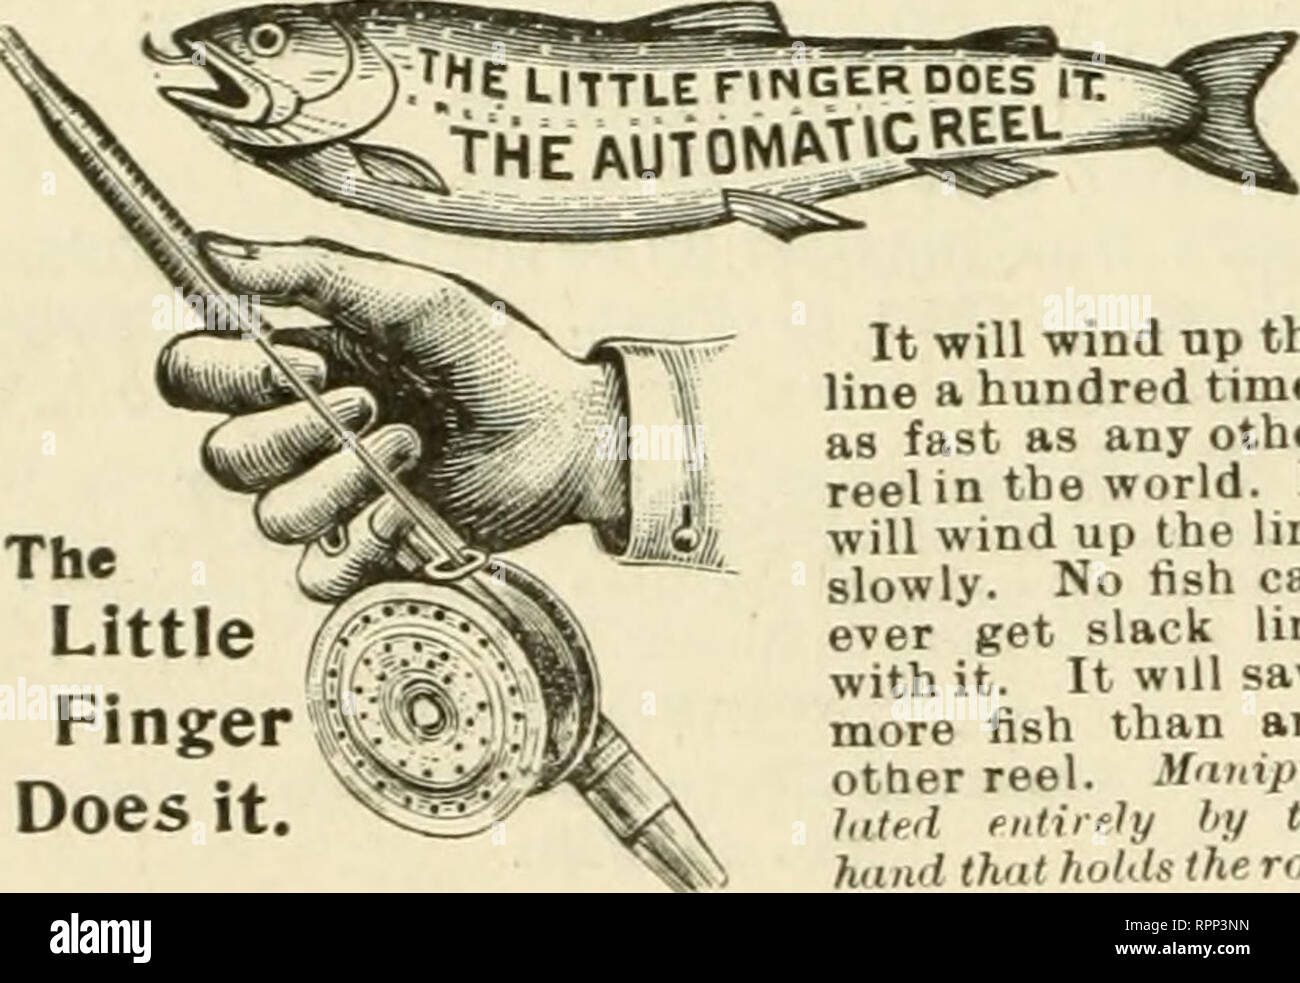 The American angler. Fishing. VIII American Angler Advertiser